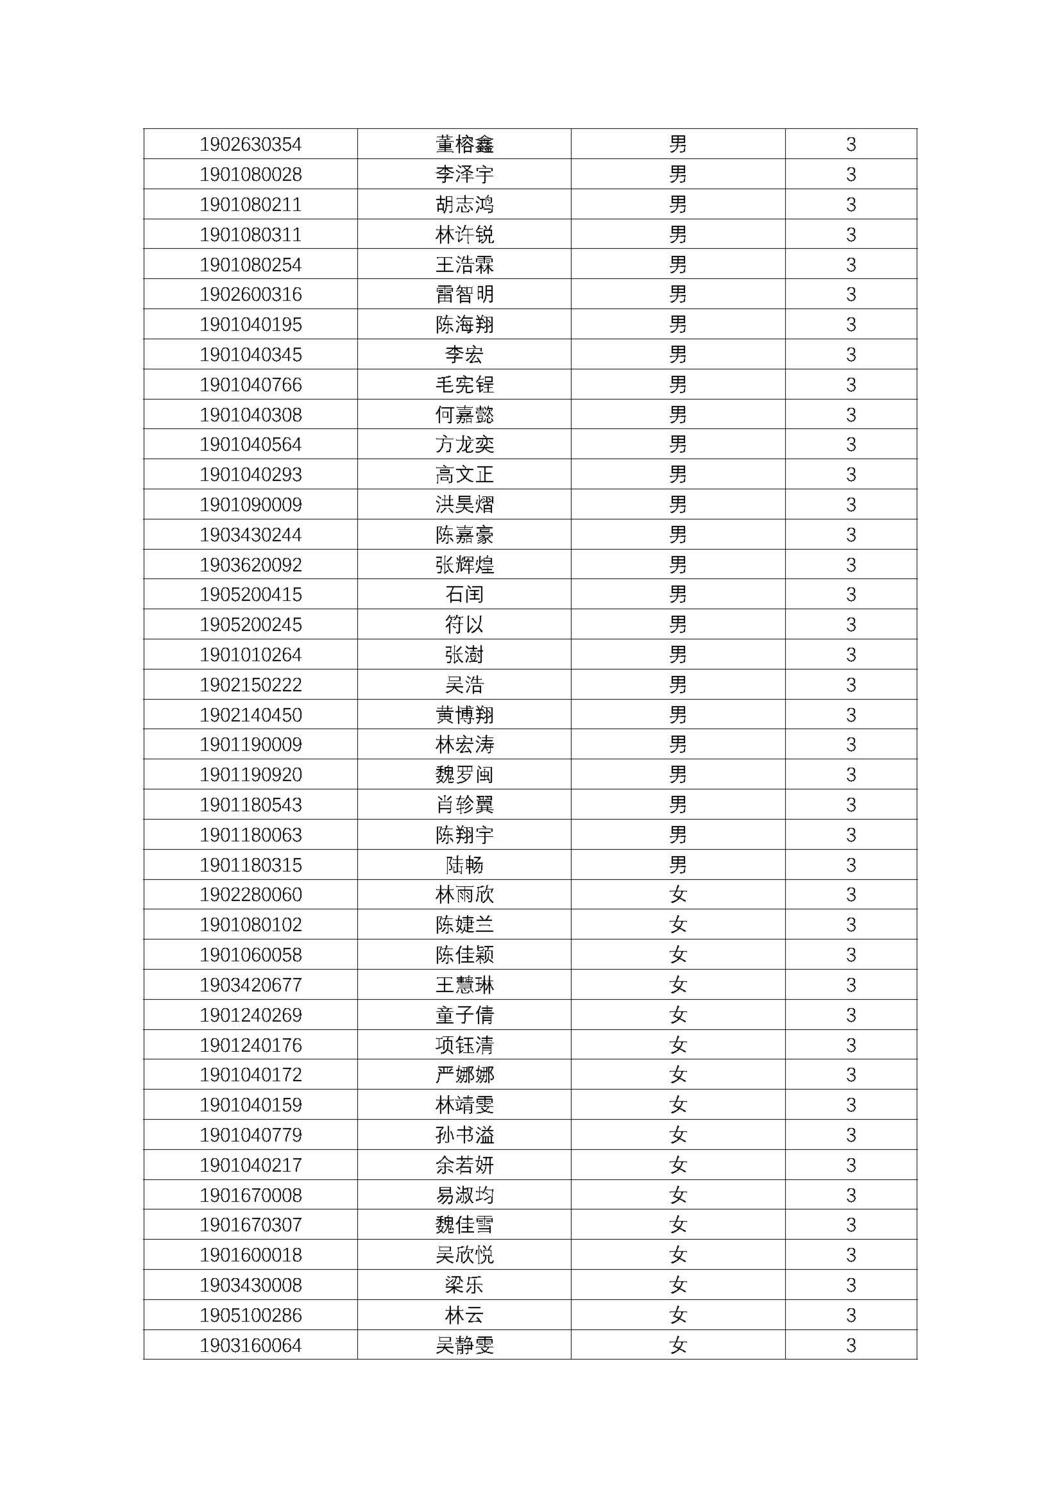 福州第十八中学2019级高一新生分班名单及报到须知_页面_04.jpg